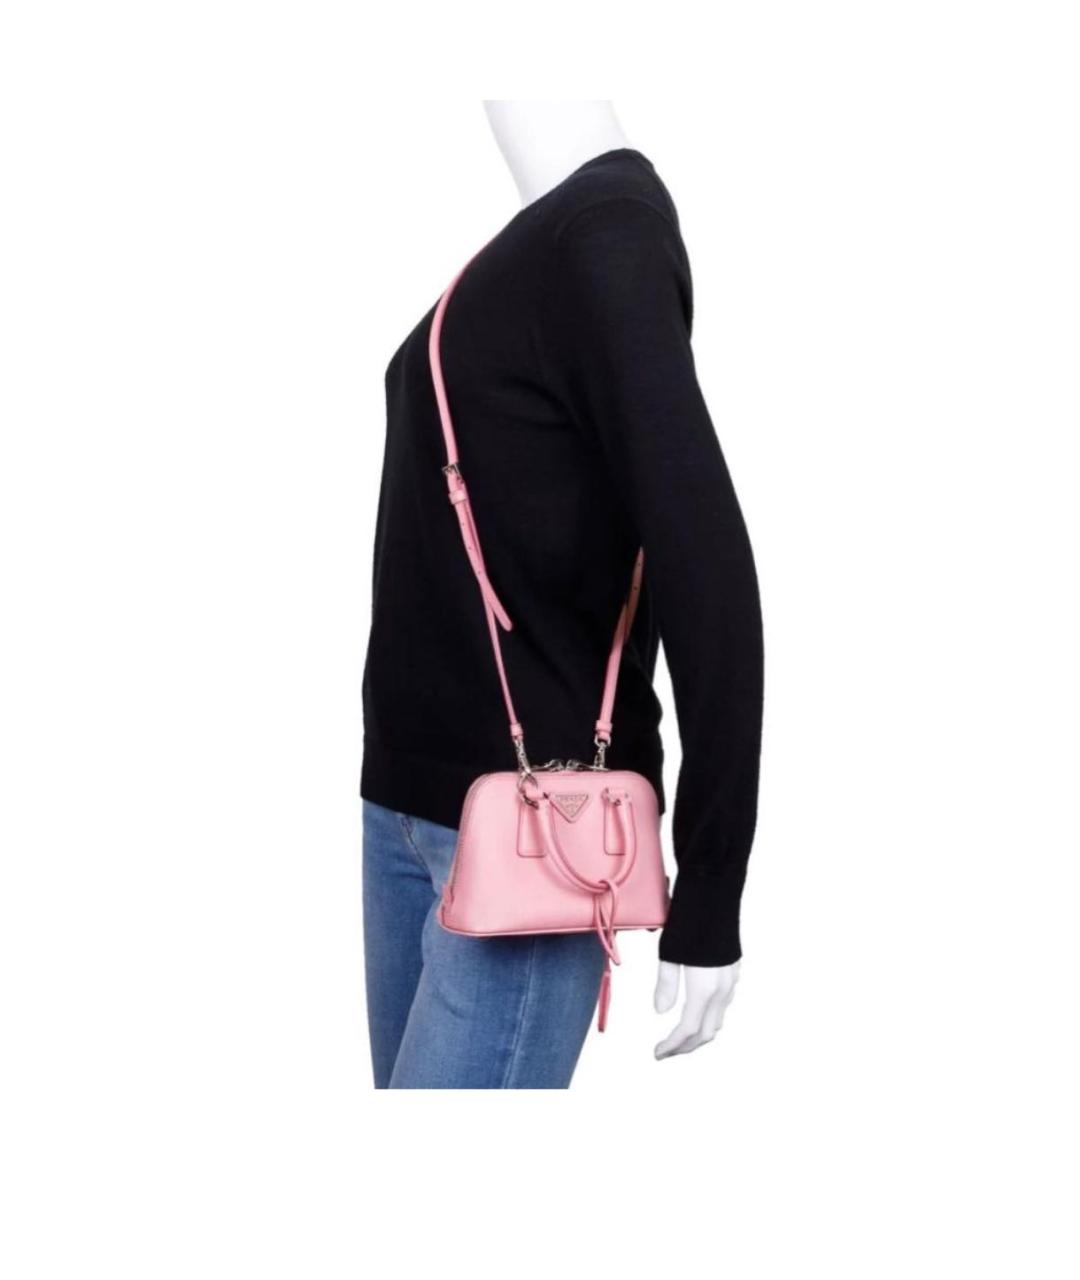 PRADA Розовая кожаная сумка через плечо, фото 4